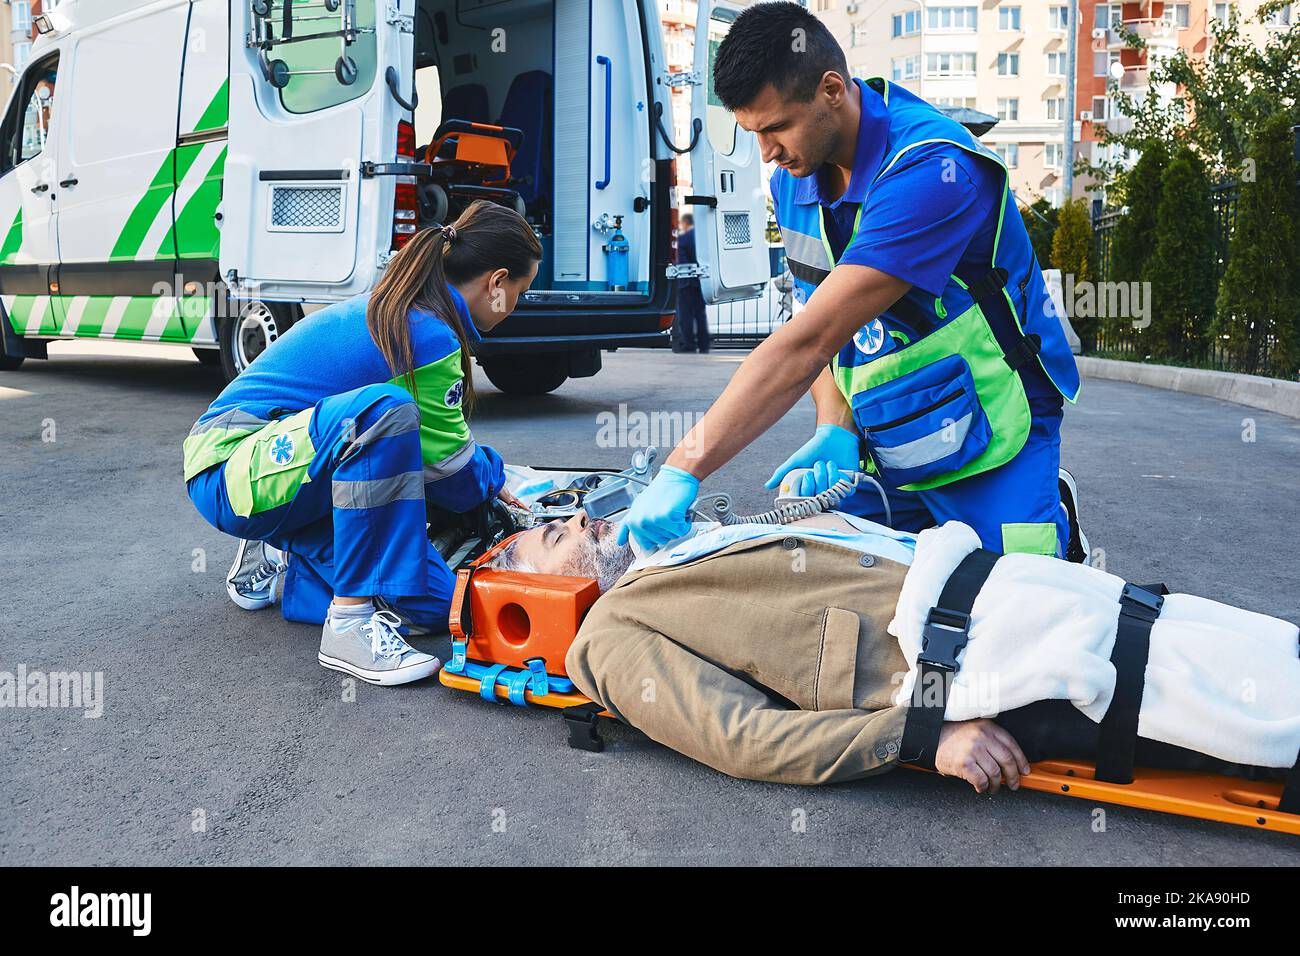 Ambulanza paramedica con defibrillatore che esegue rianimazione cardiopolmonare su pazienti cardiaci sdraiati su barella di emergenza Foto Stock